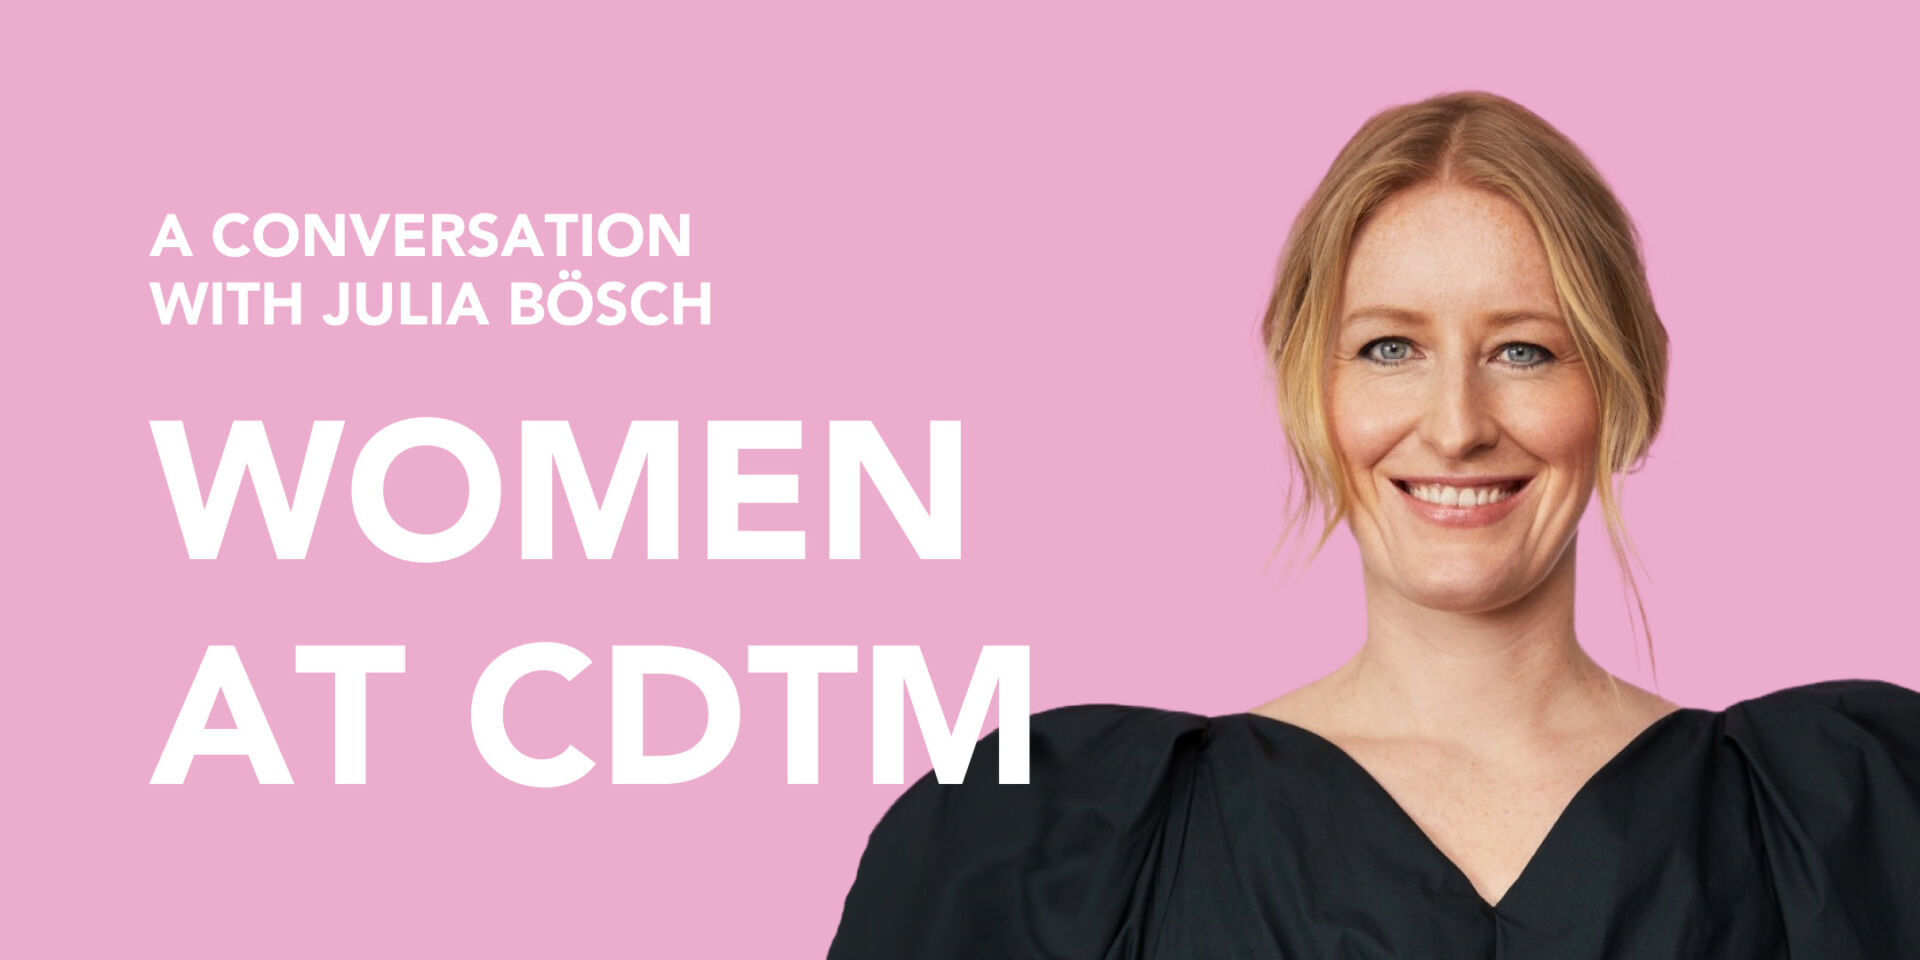 Julia Bösch - Women at CDTM